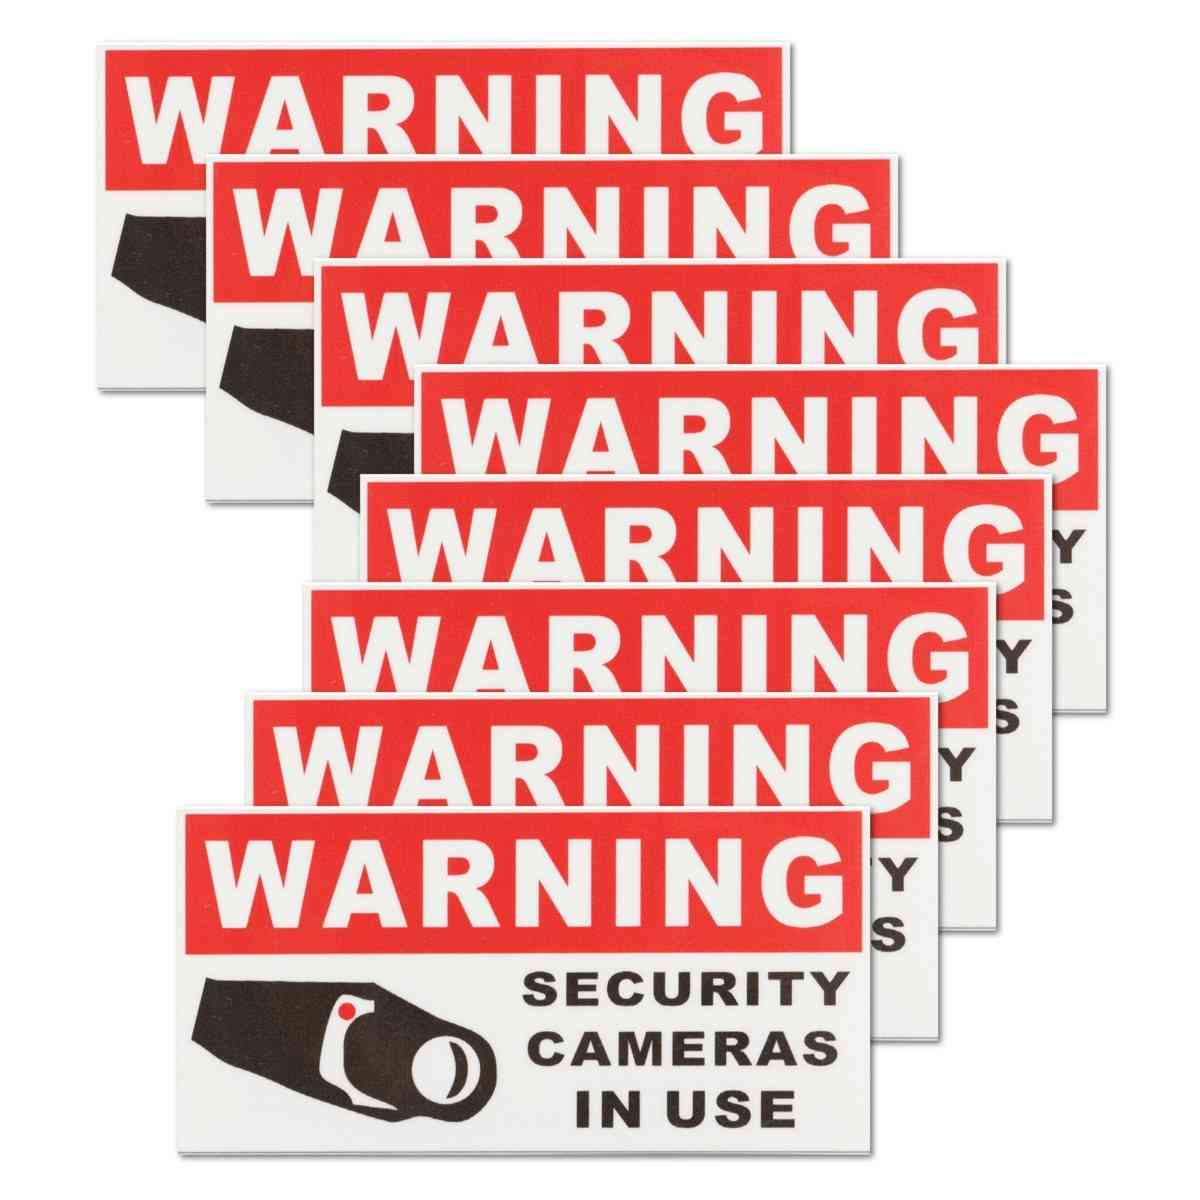 Cámara de seguridad en uso pegatinas de advertencia autoadhesivas impermeables